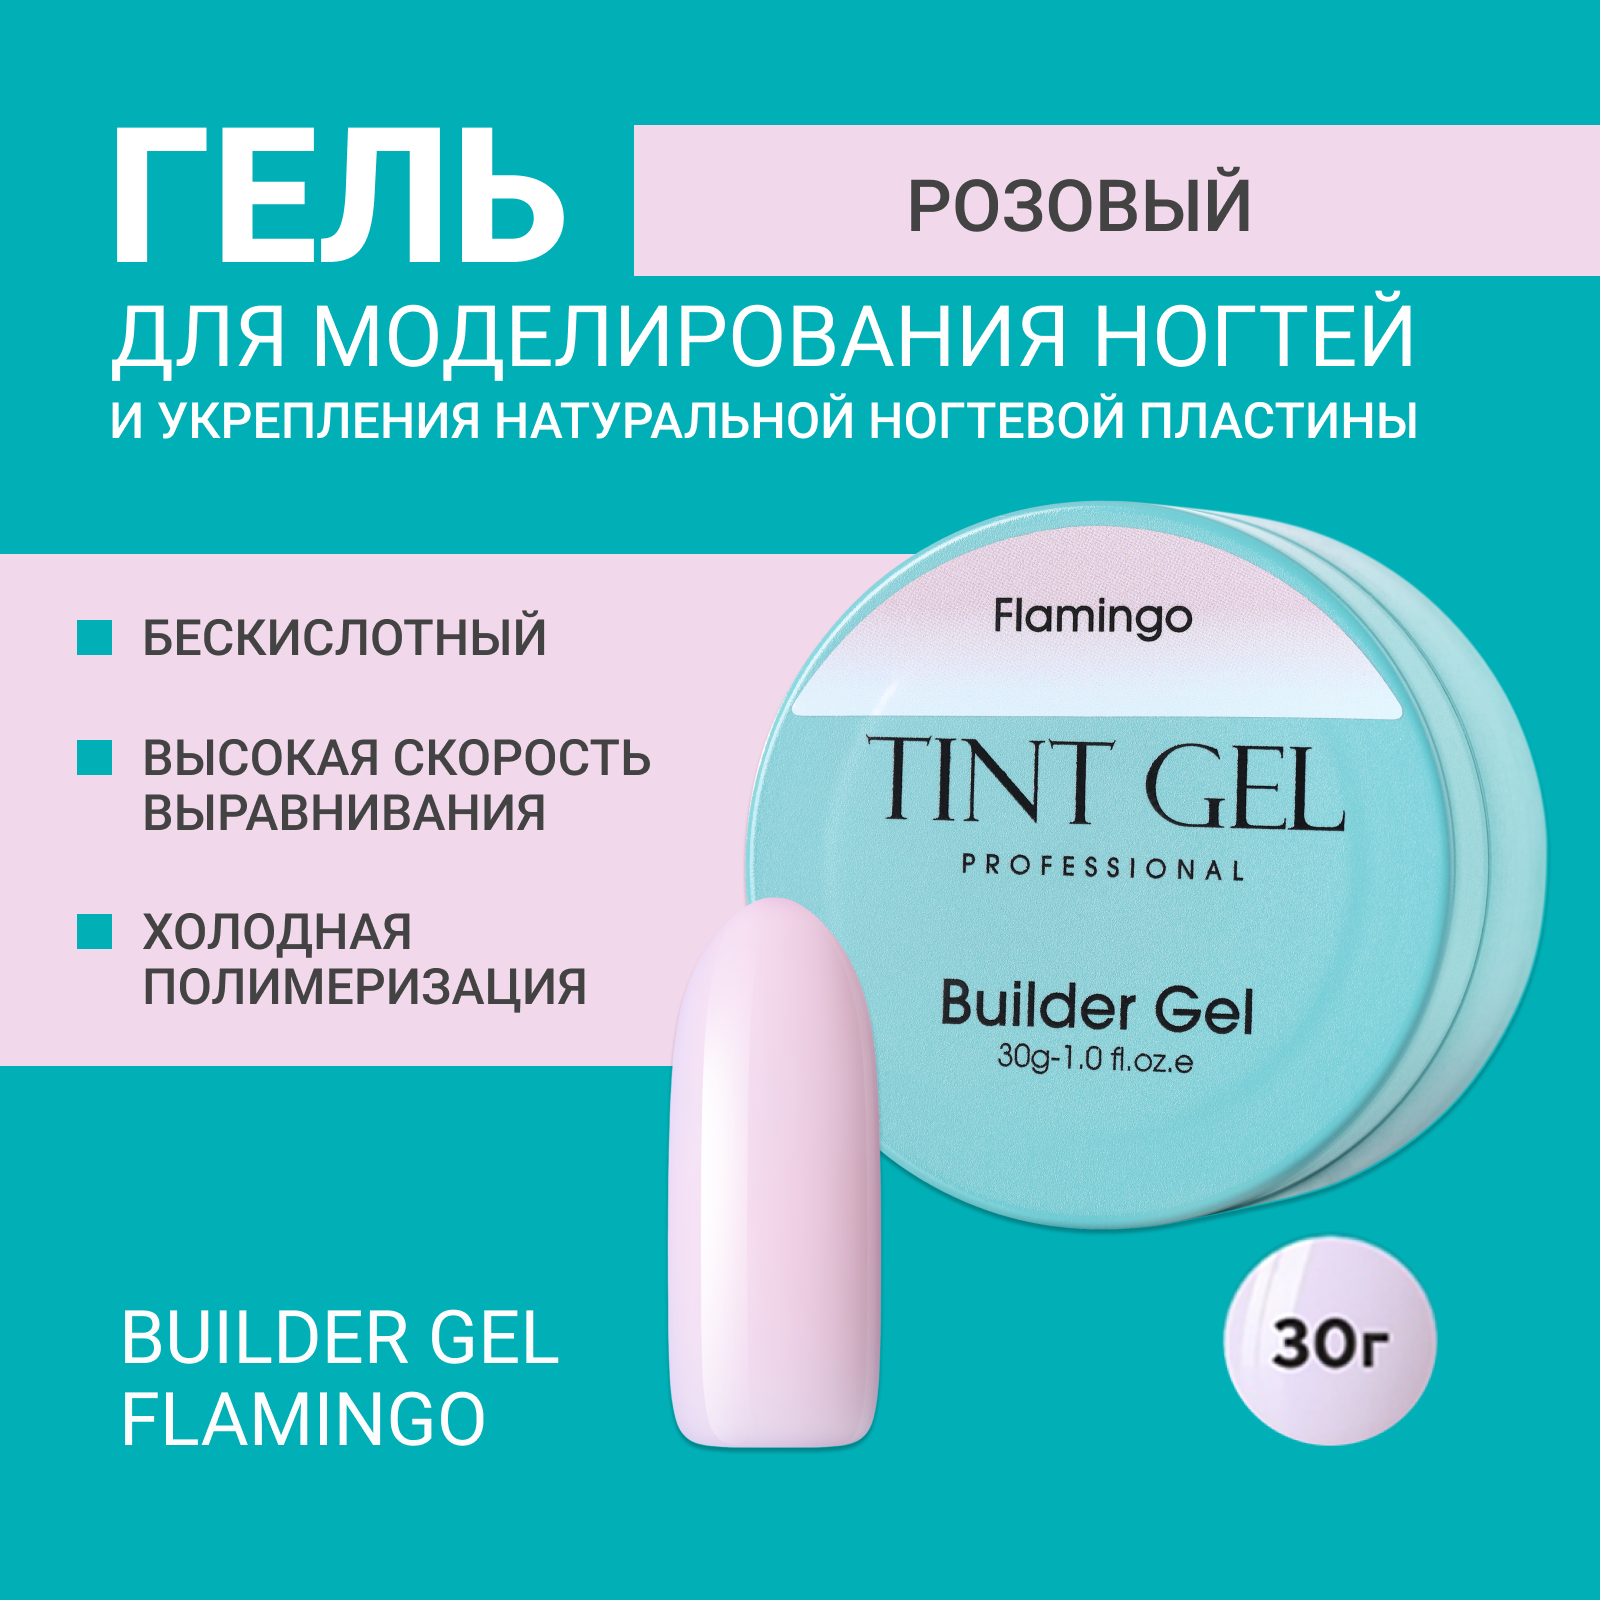 Гель Tint Gel Professional Builder gel Flamingo 30 г благородные хулиганы из 2 а